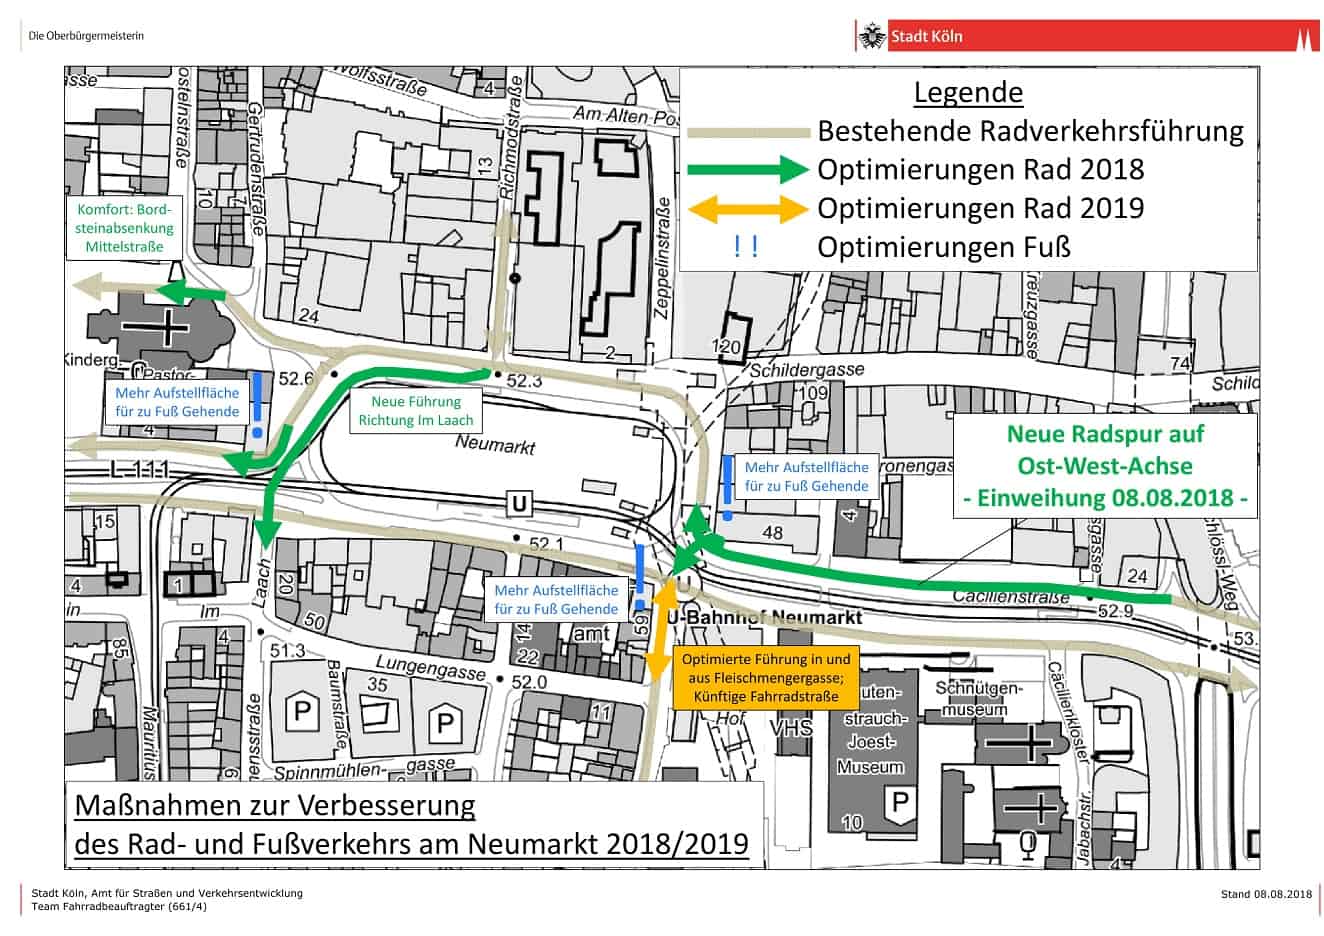 Stadt Köln - Maßnahmen zur Verbesserung des Rad- und Fußverkehrs am Neumarkt 2018/2019